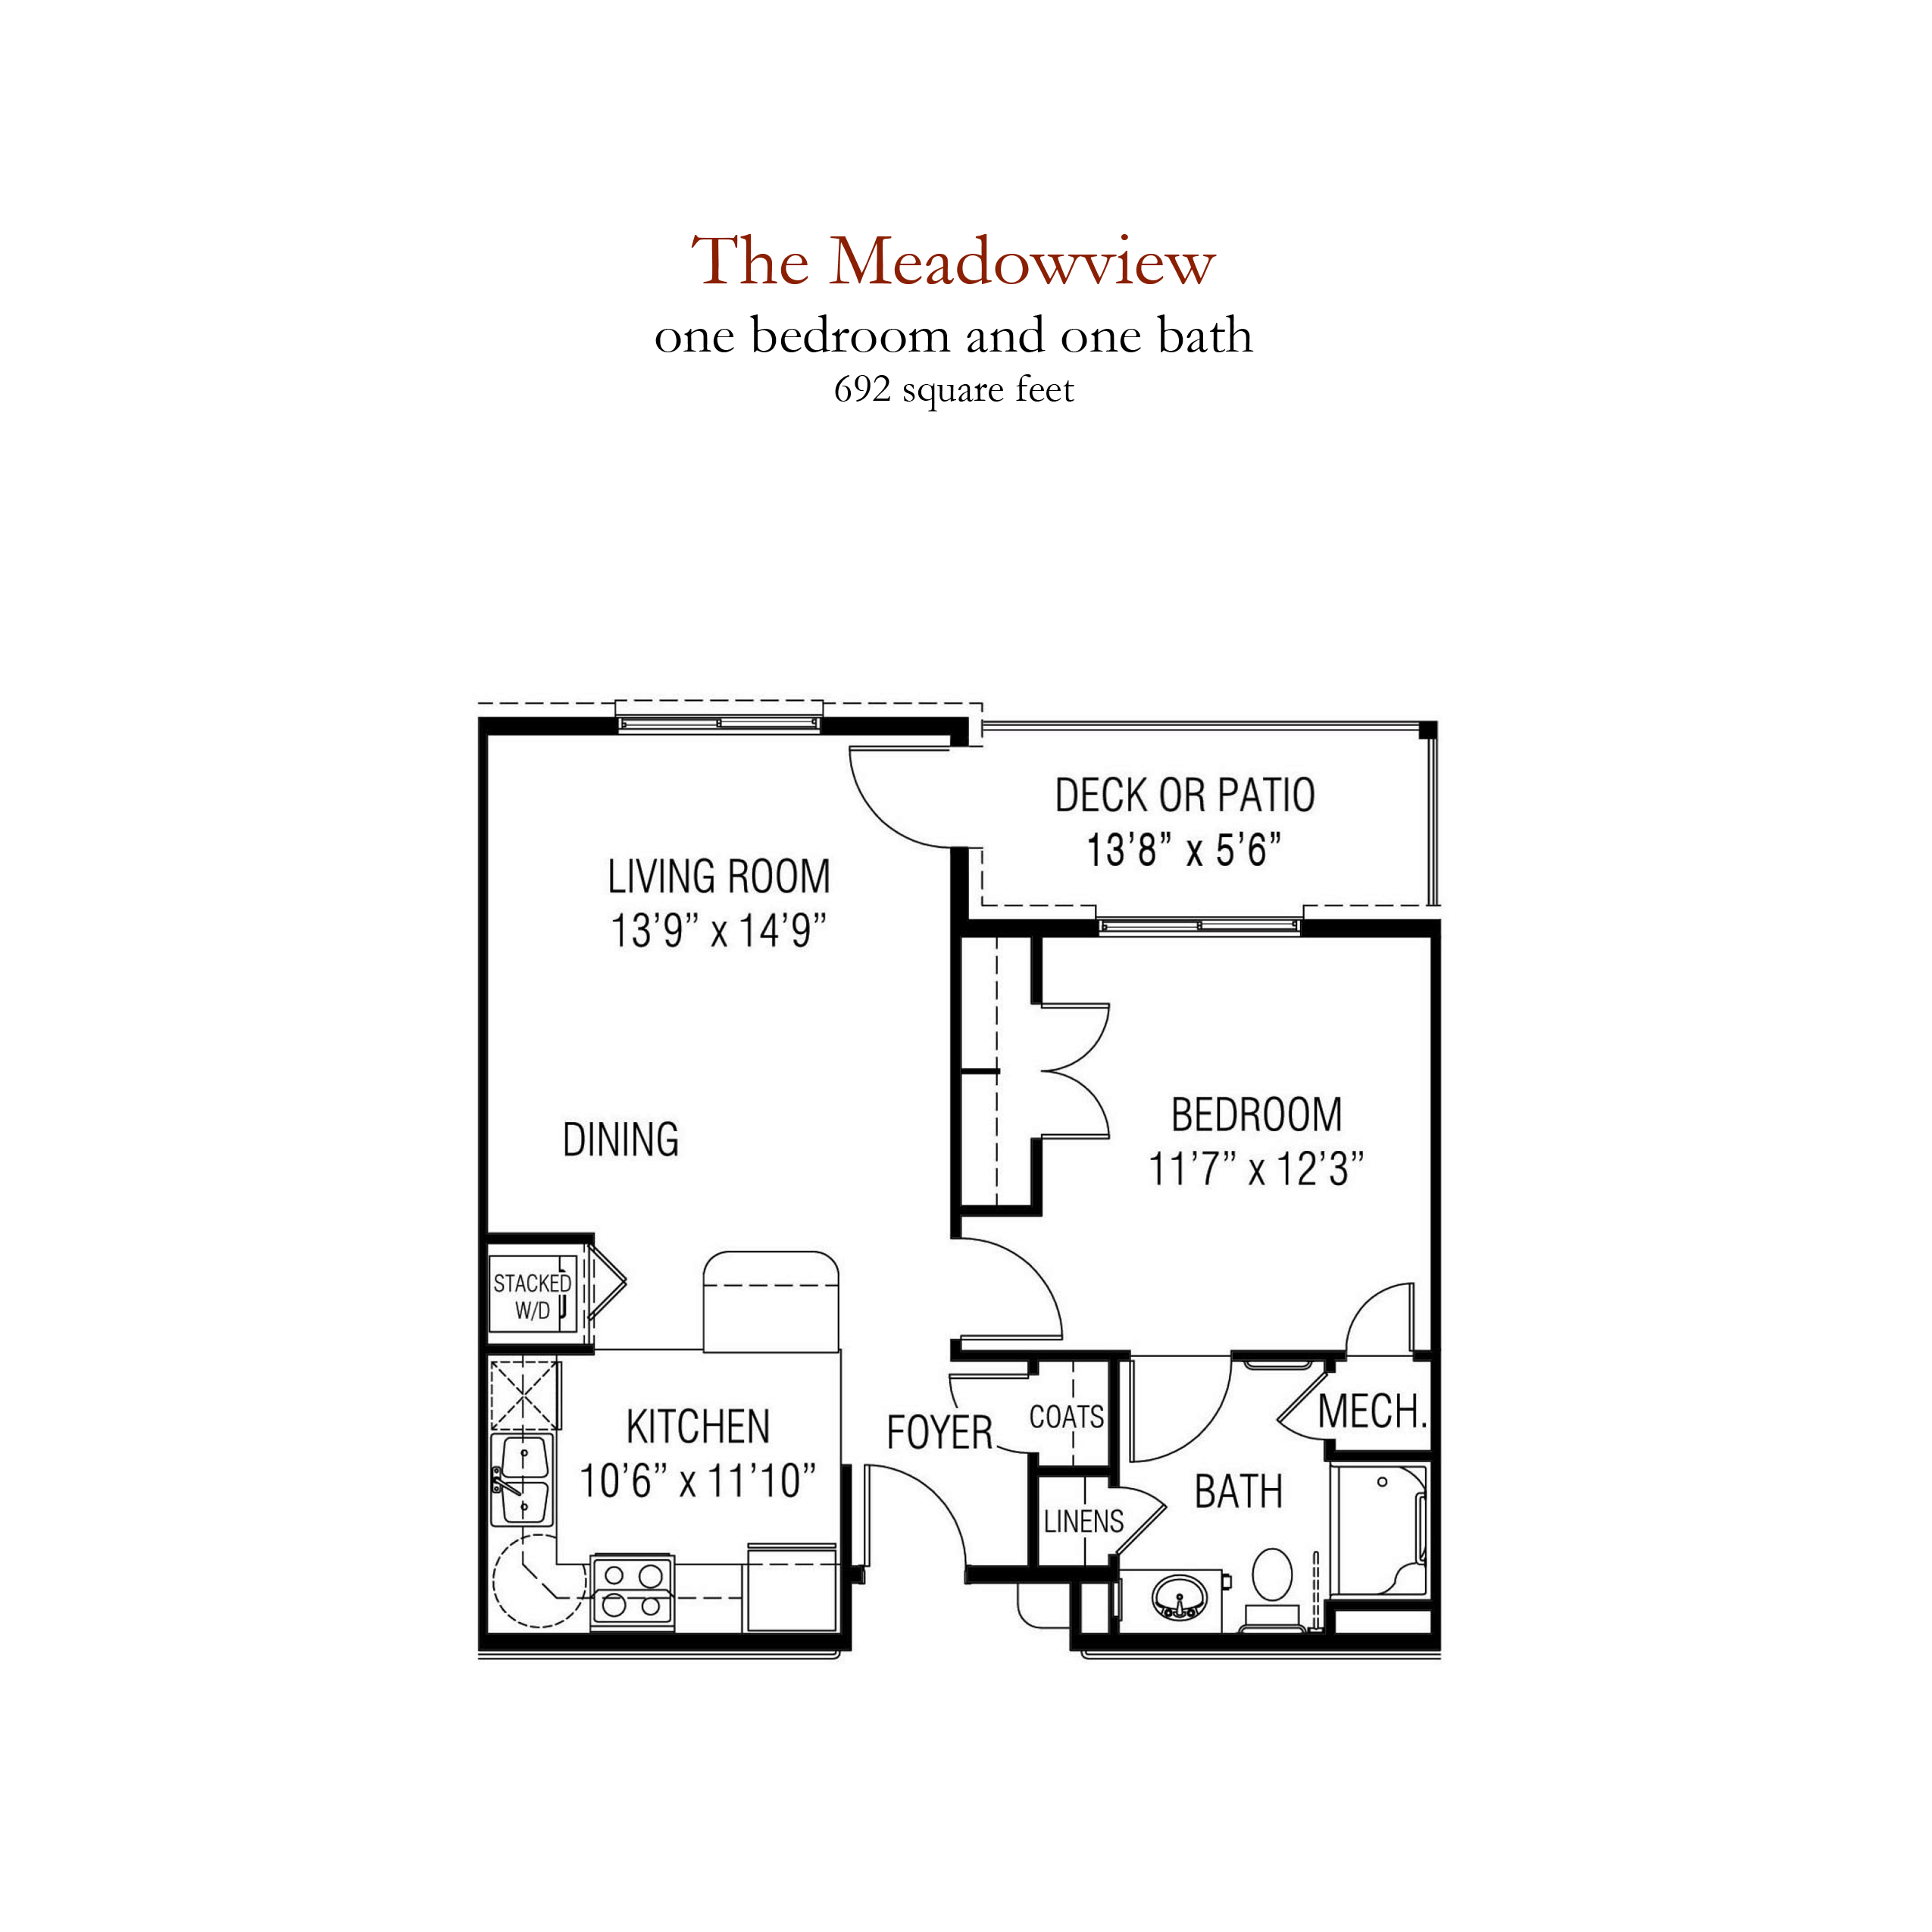 The Meadowview senior living - 1 bedroom and 1 bathroom floor plan